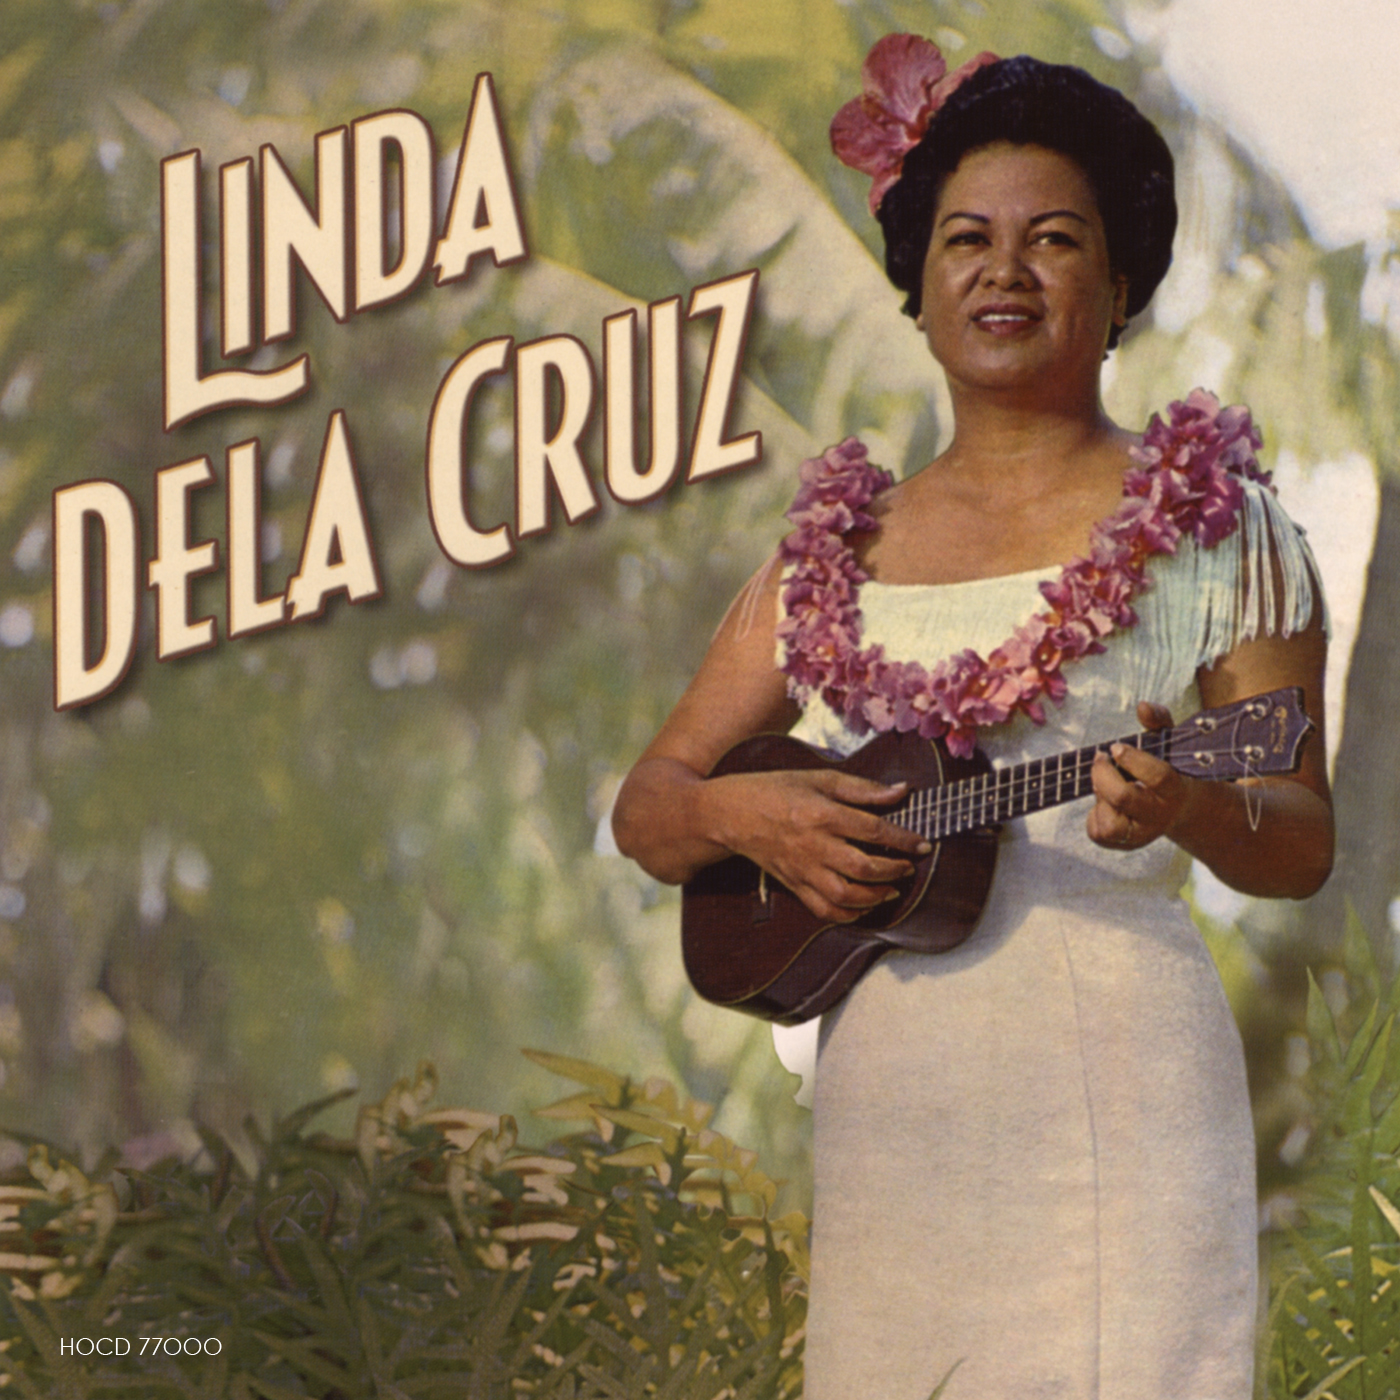 Linda Dela Cruz